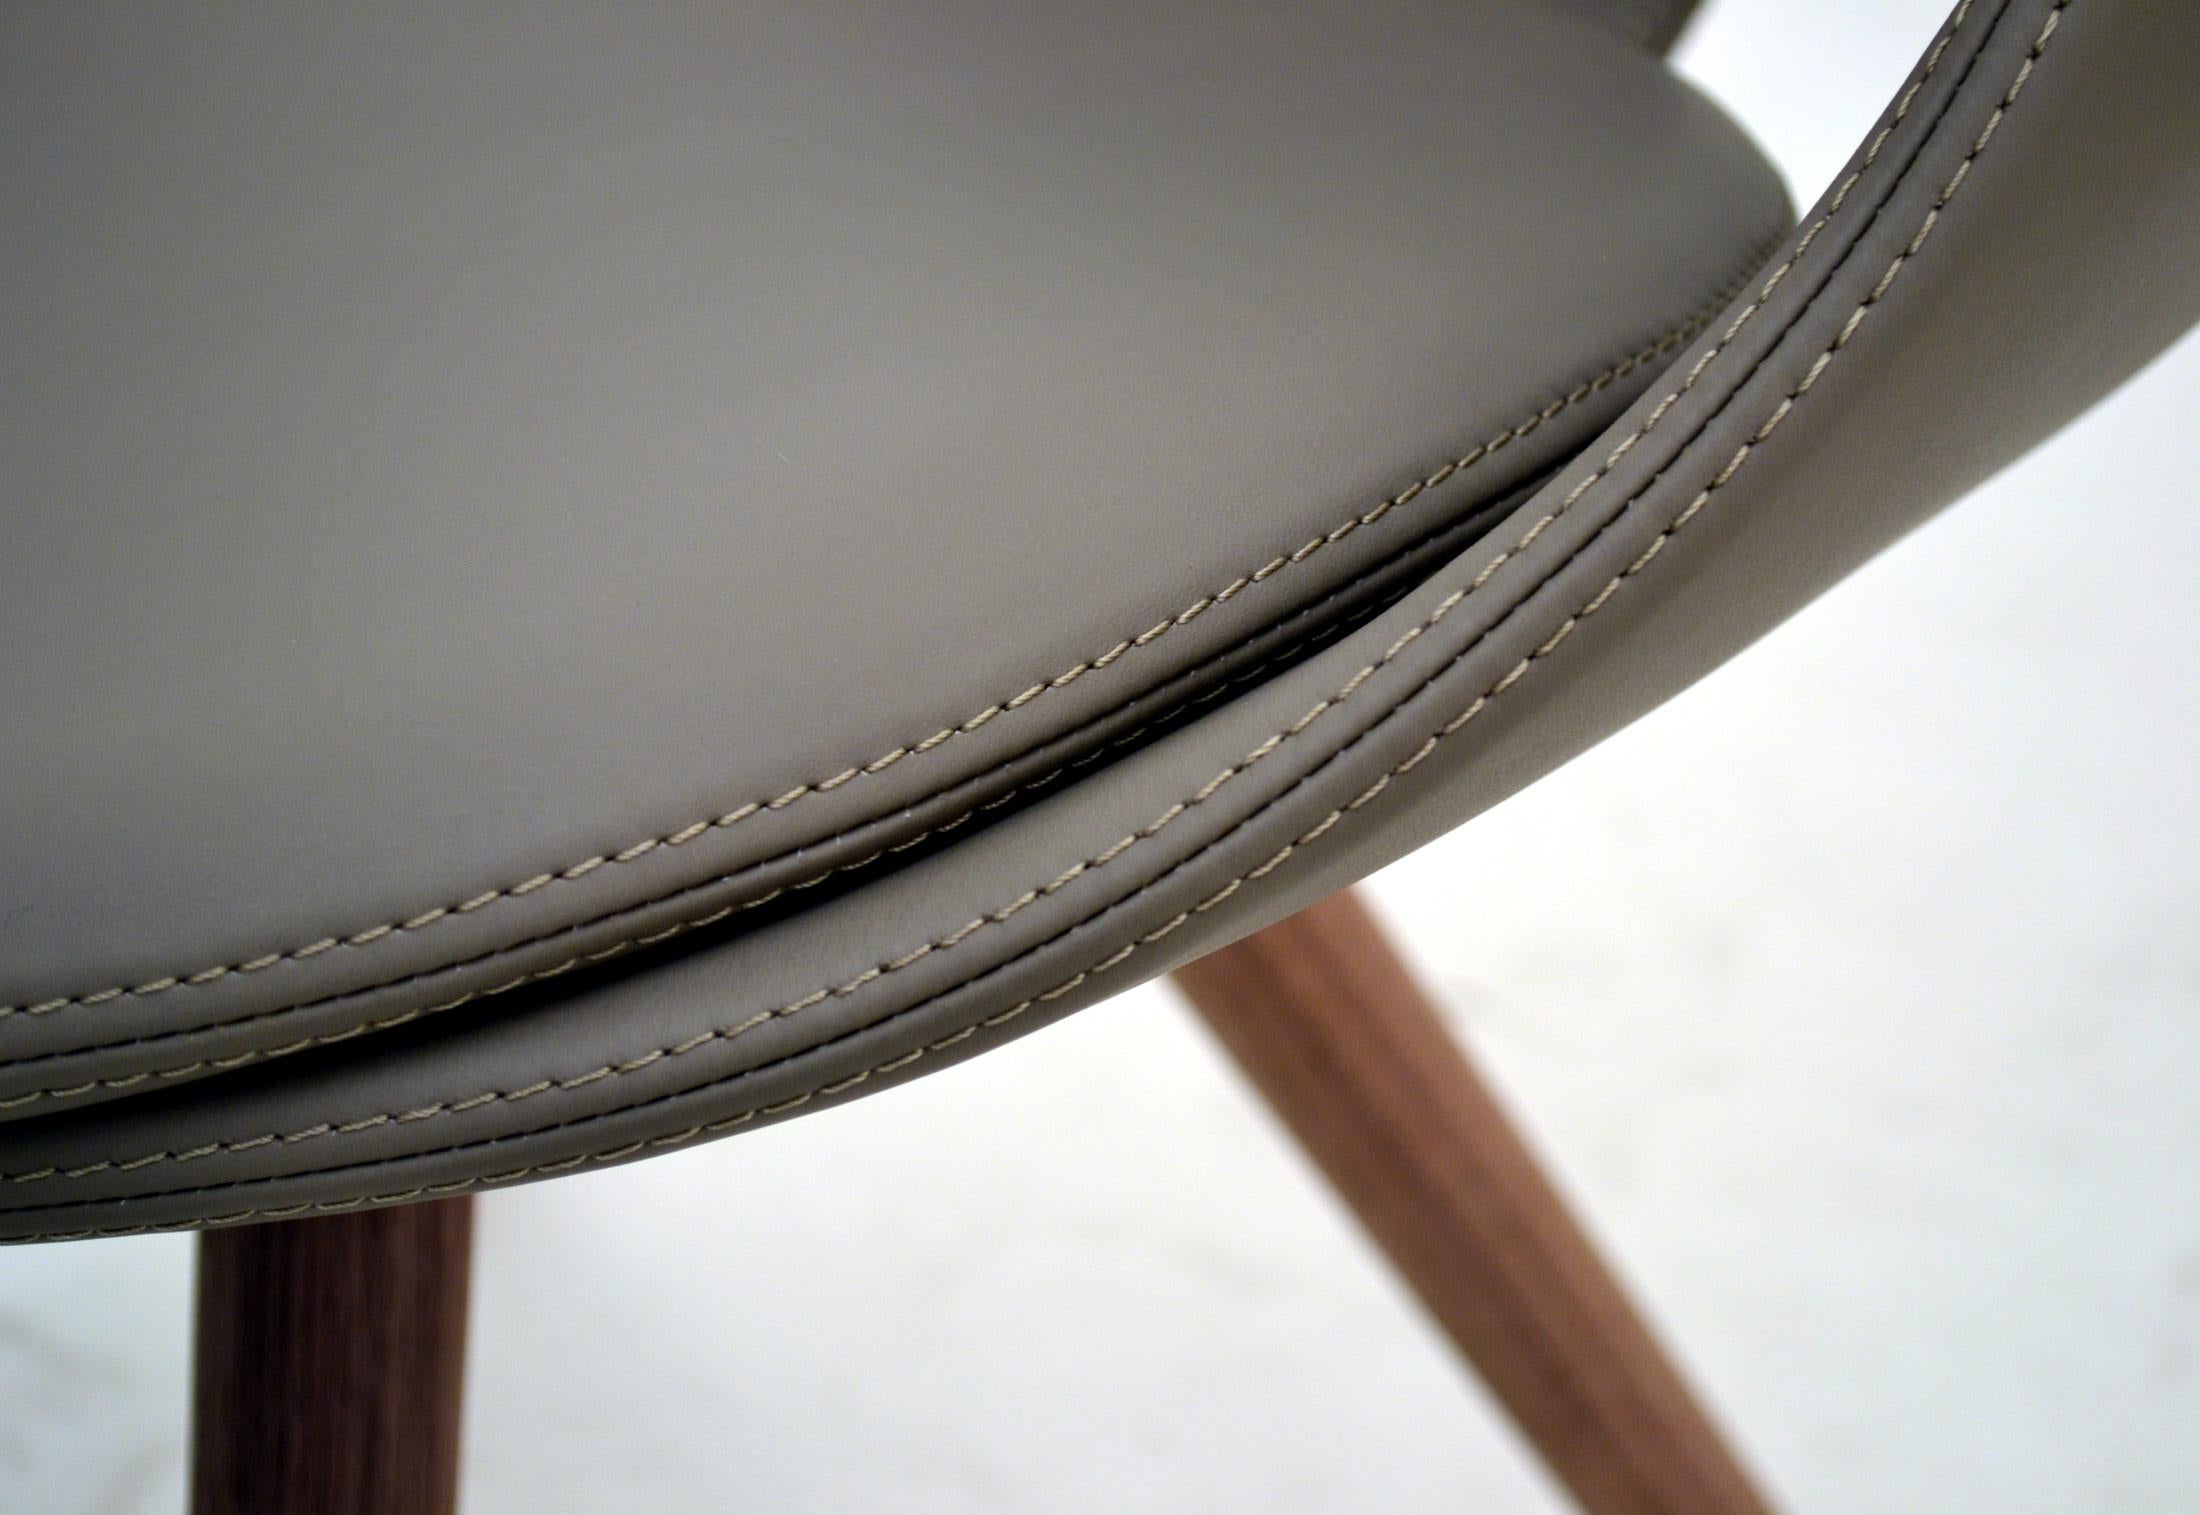 UP Upholstered Leather Dining Room Chair, Contemporary, Modern Italian Design (21. Jahrhundert und zeitgenössisch)